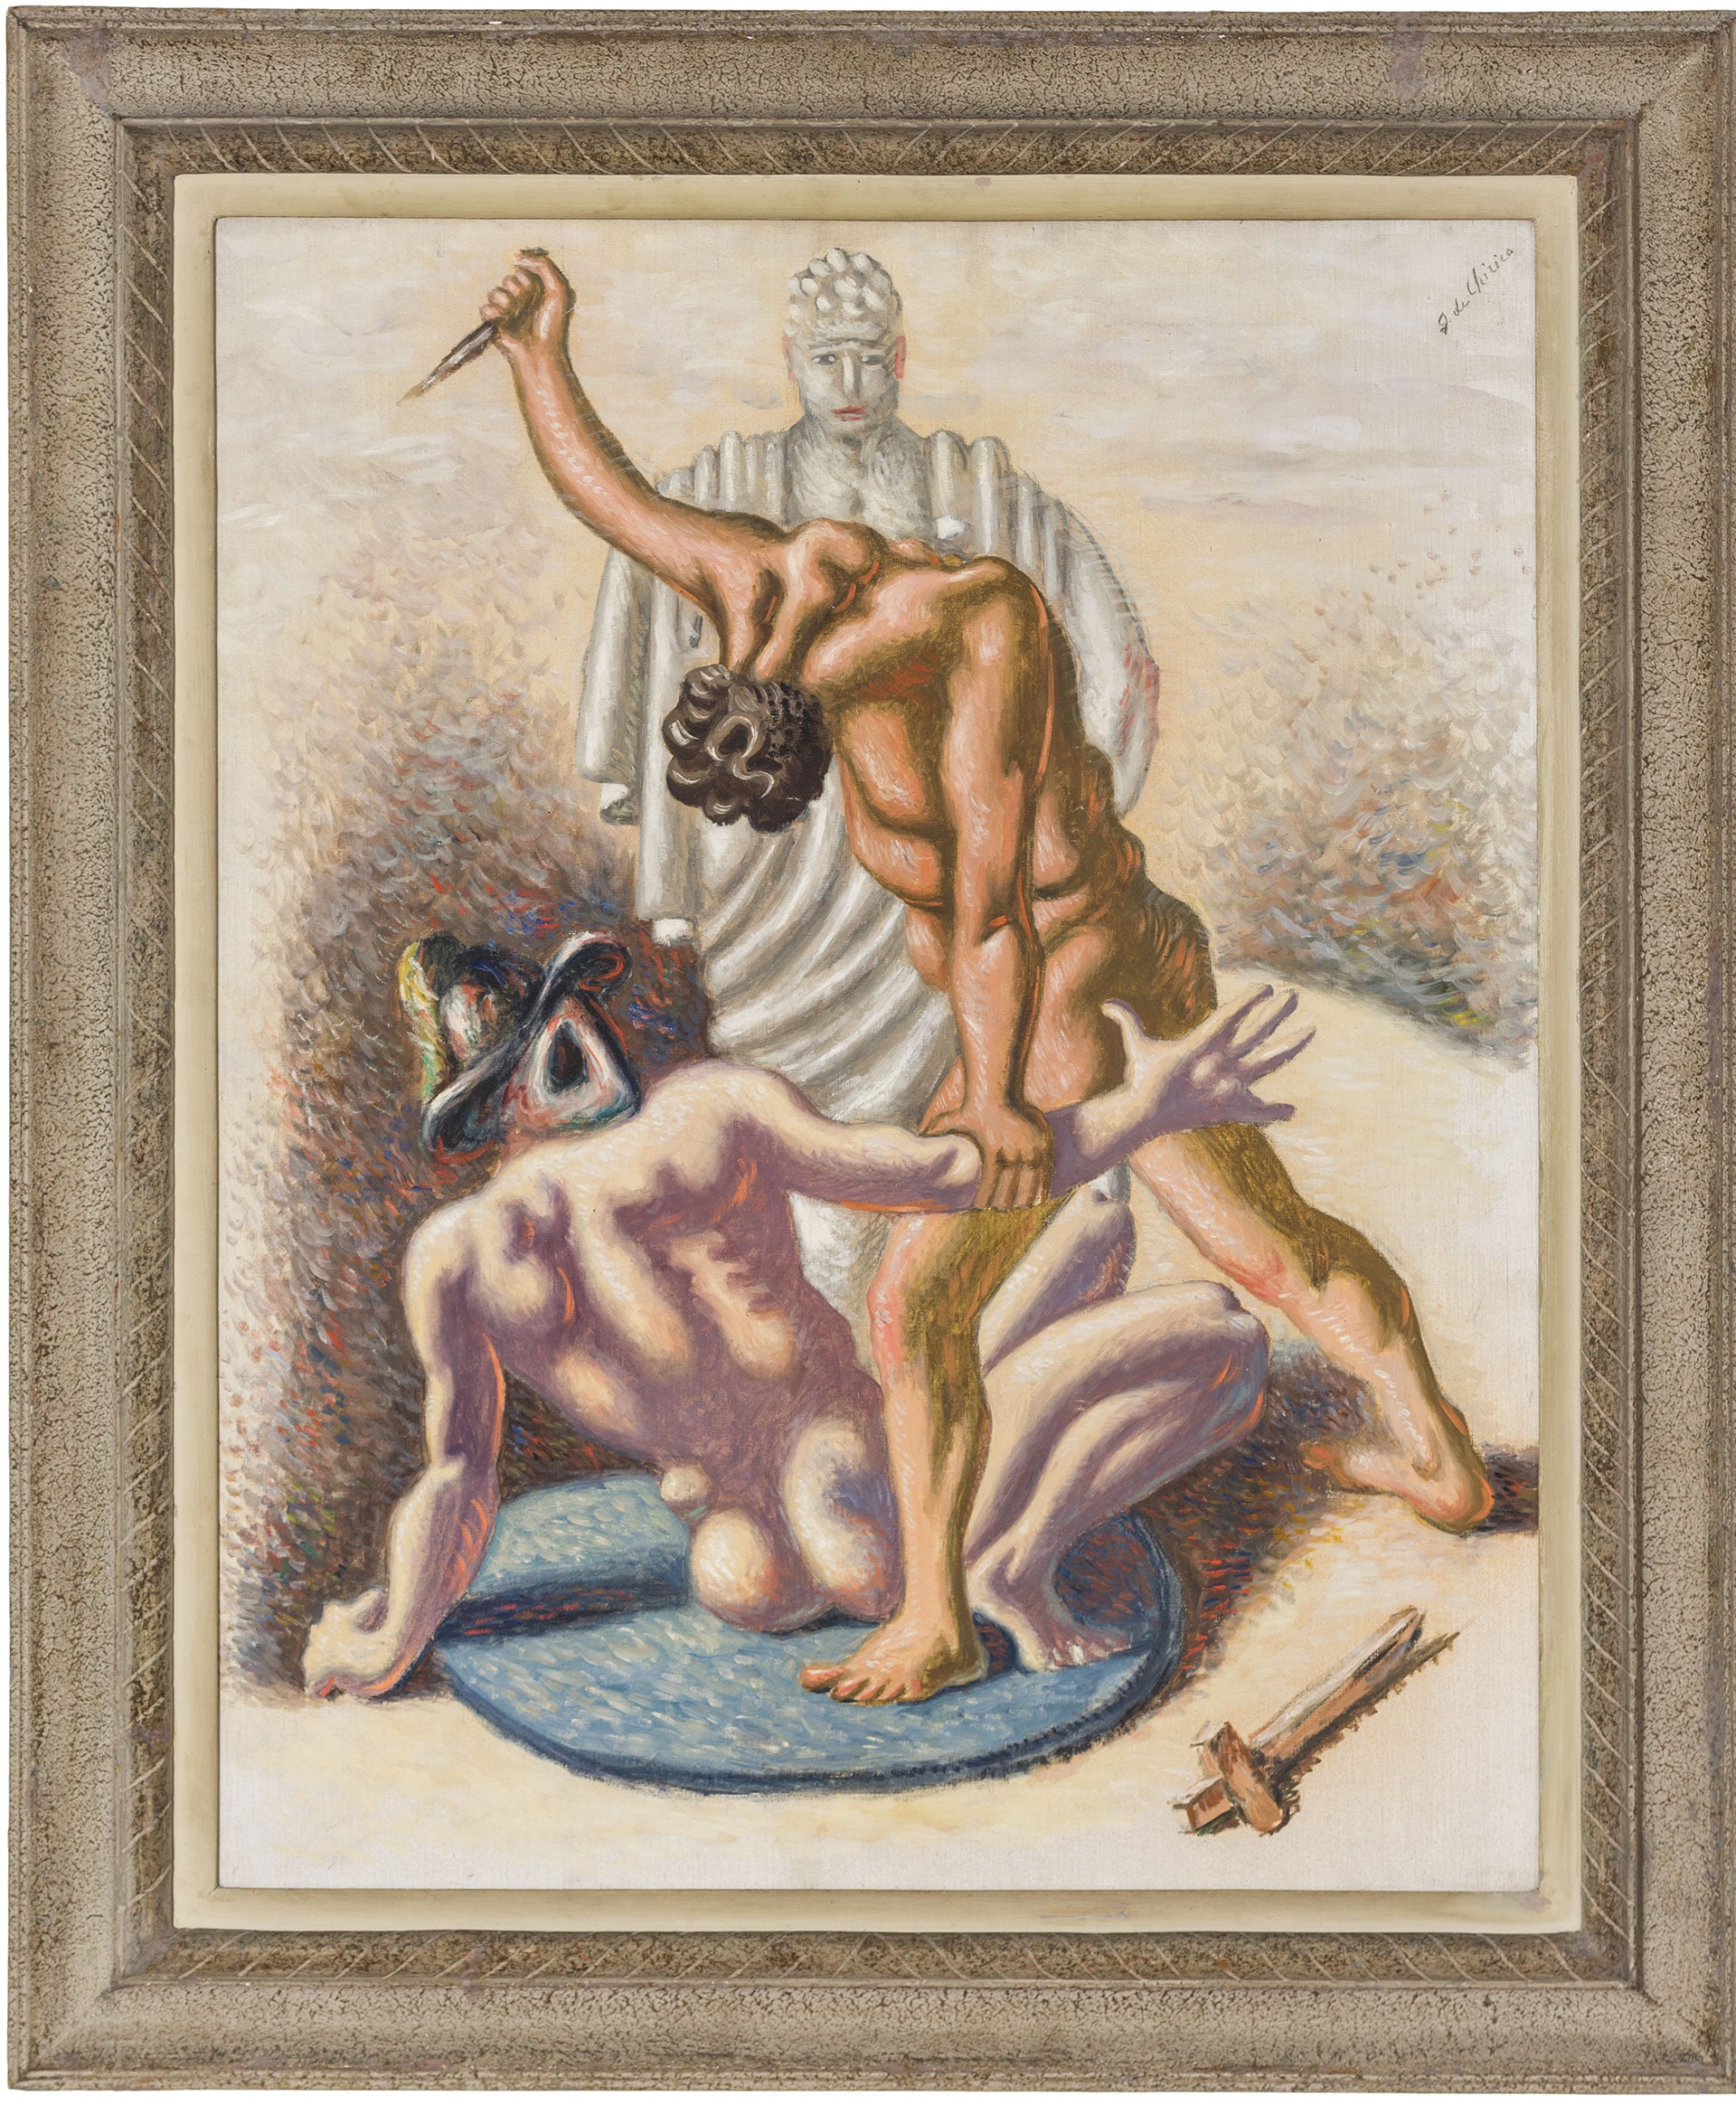 Giorgio de Chirico (Volos, Grecia, 1888 – Roma, 1978), Gladiatori, 1929. Tempera grassa su tela, cm. 81x64